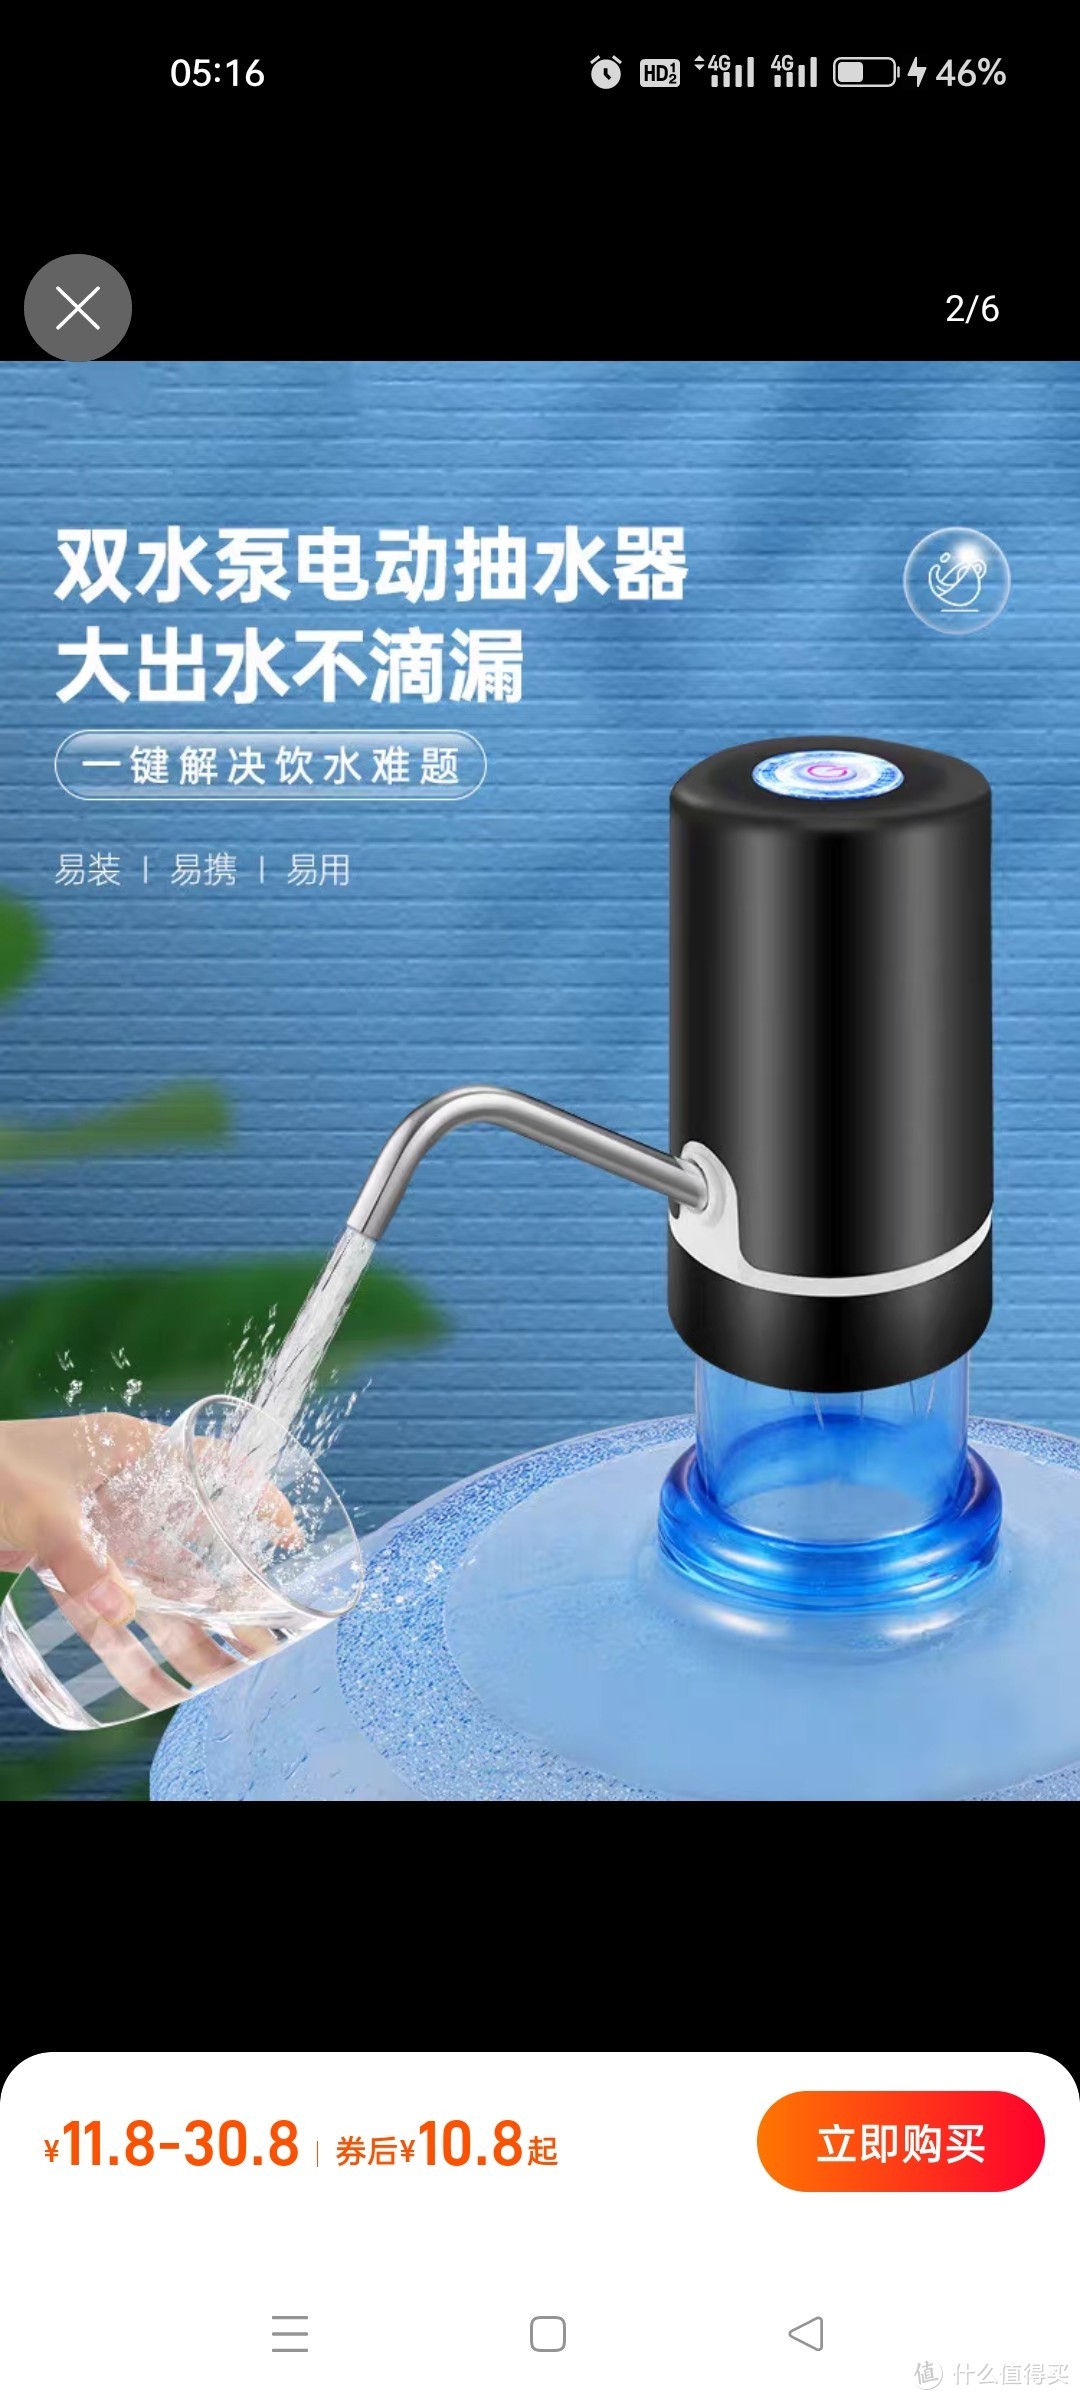 电动桶装水抽水器家用矿泉水出水器自动按压取水泵饮水机吸水神器